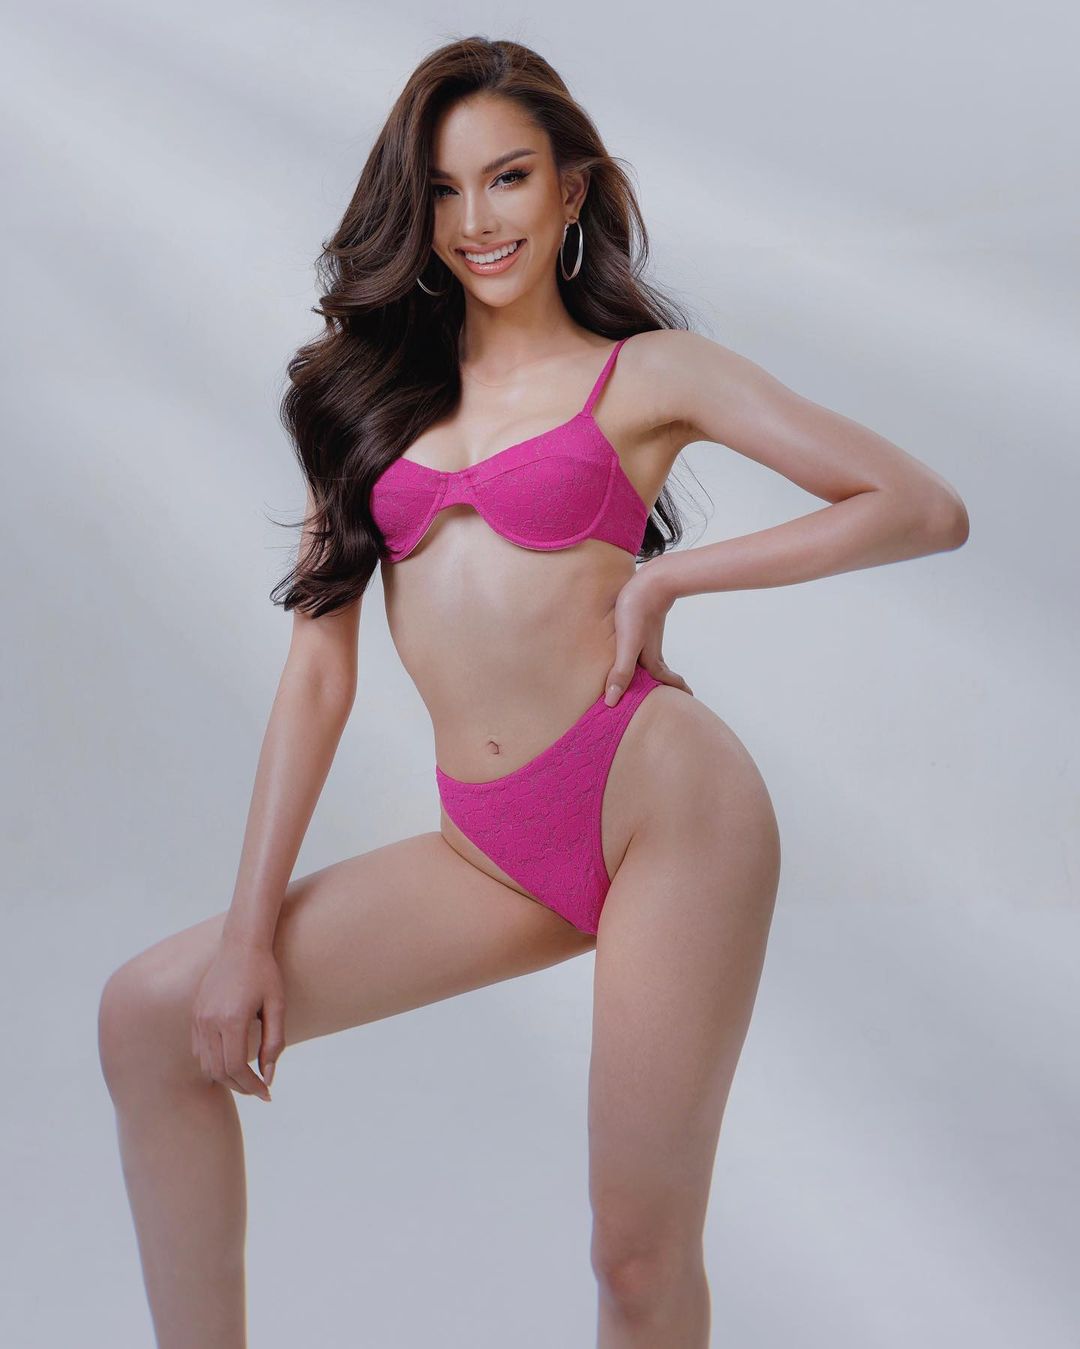 Động thái gây chú ý của đại diện Thái Lan sau cú sốc tại Hoa hậu Hoàn vũ 2022 - Ảnh 3.